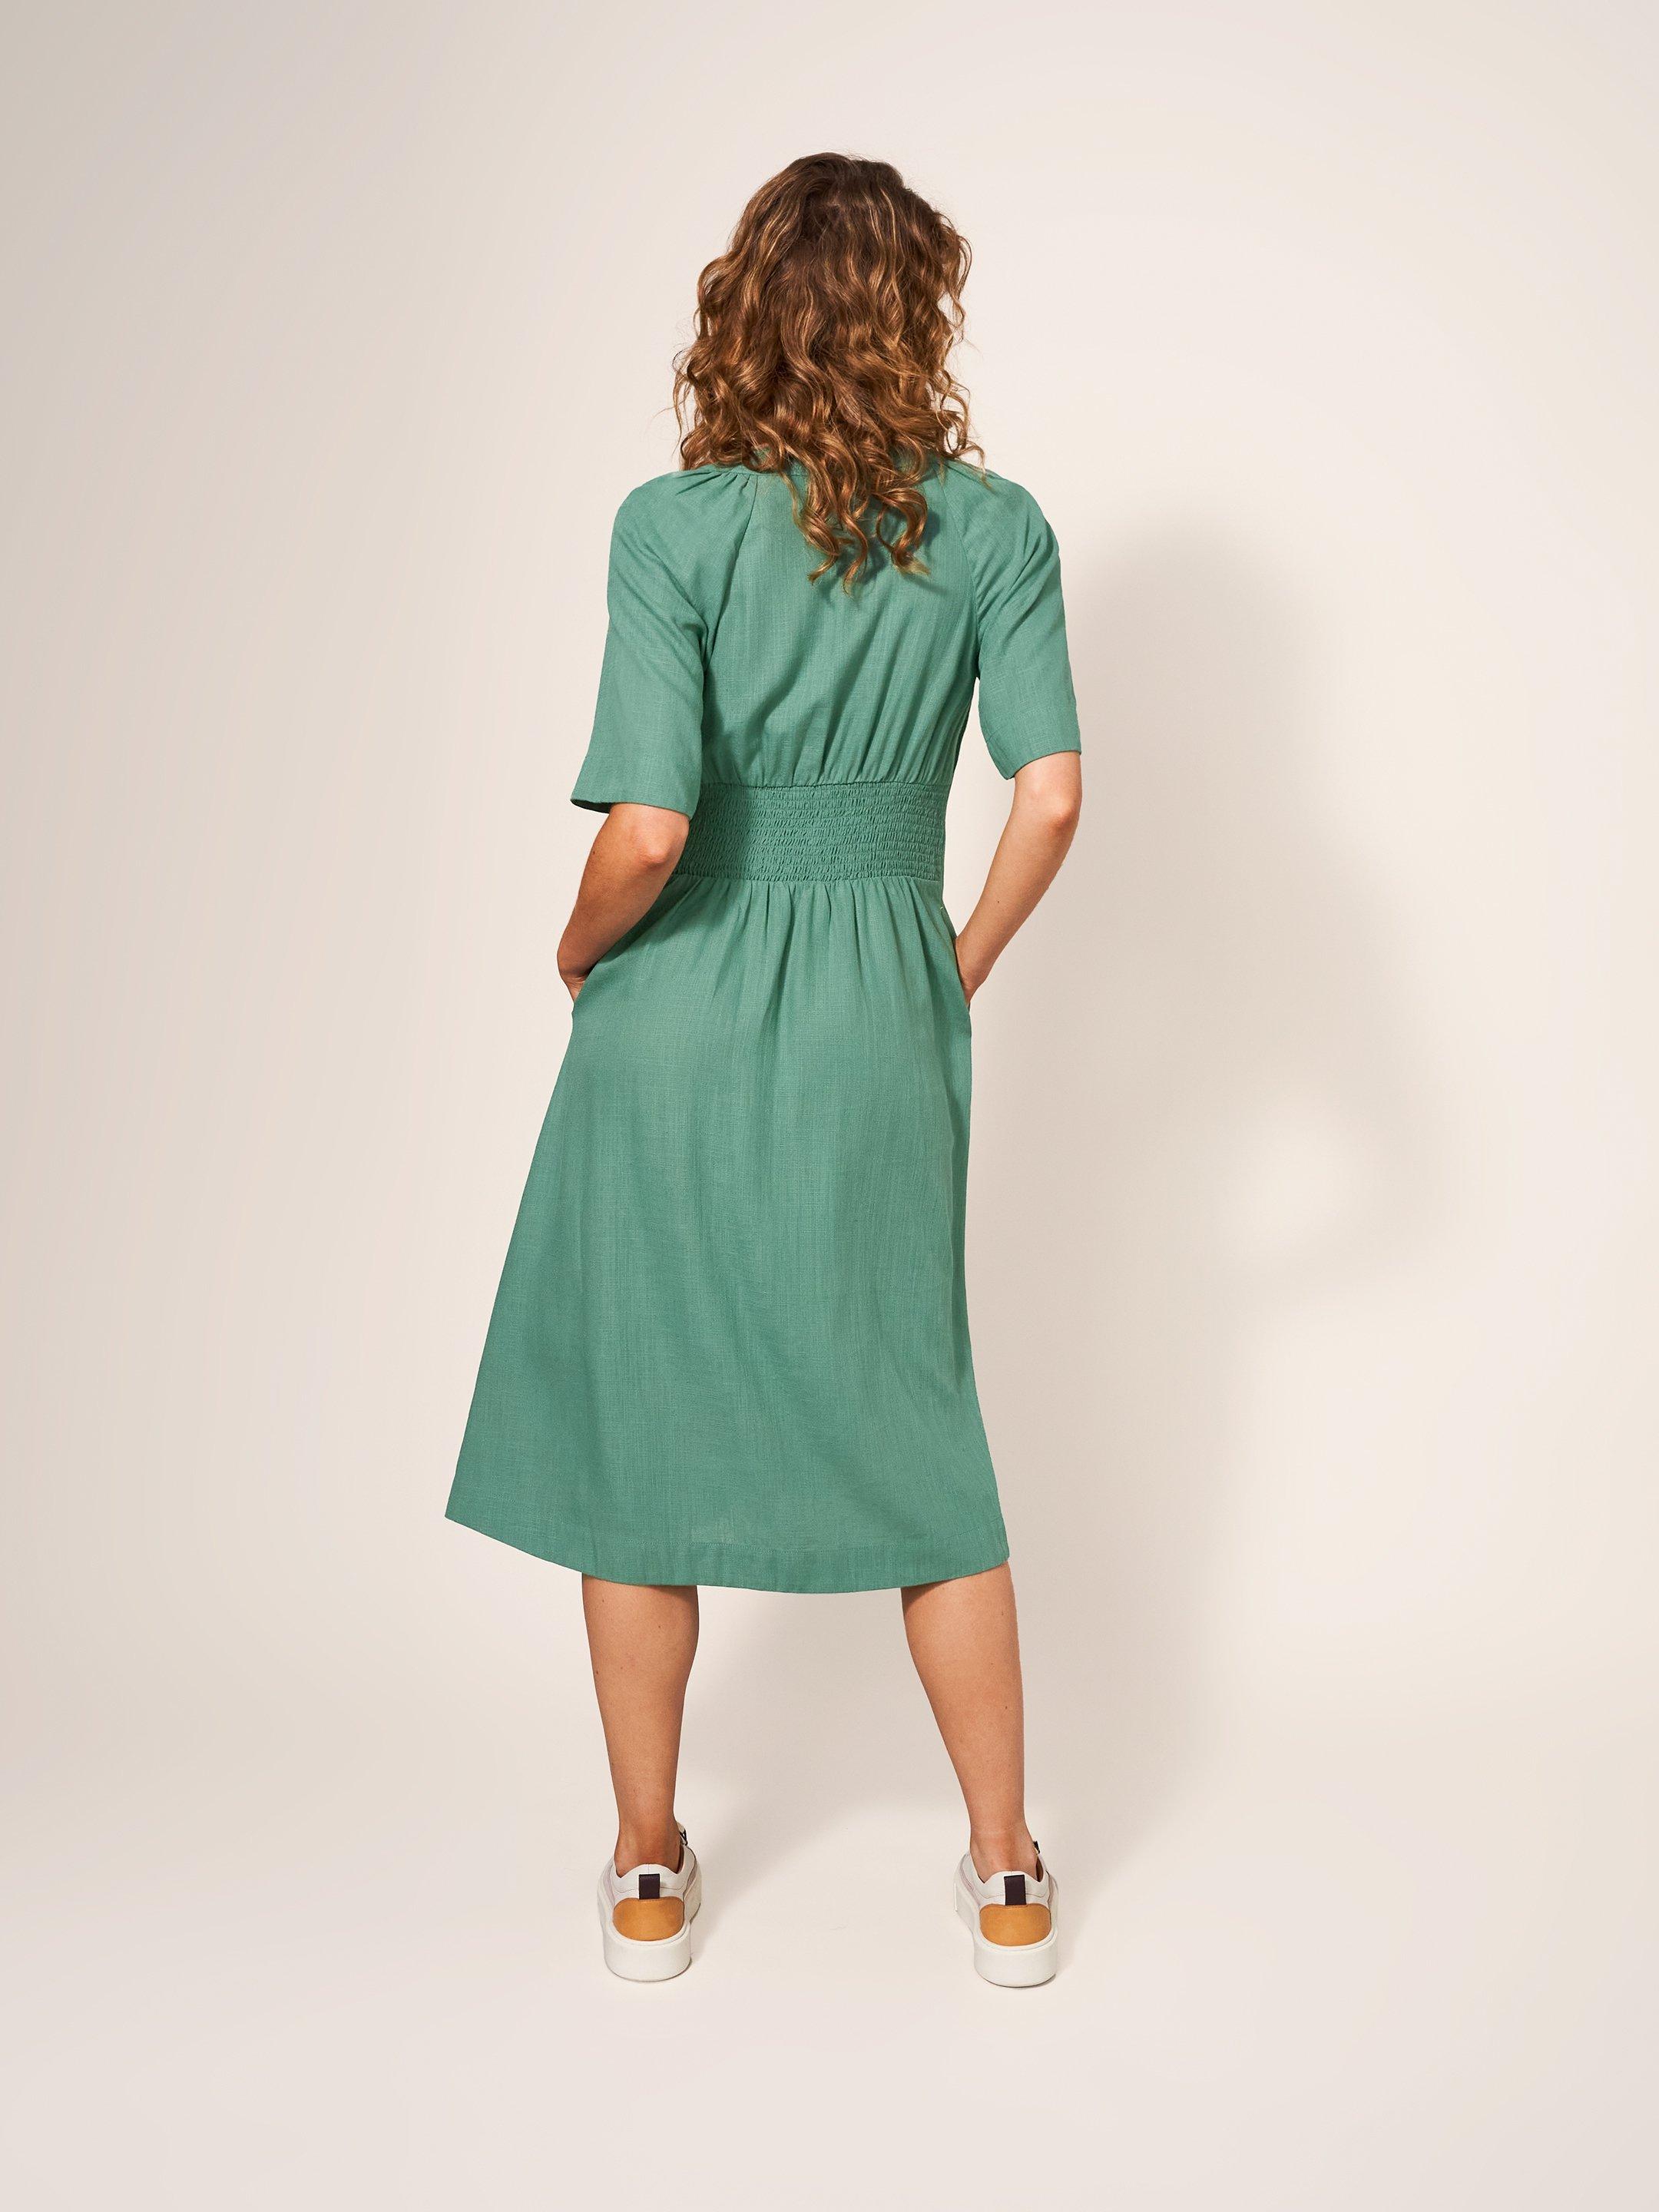 Izzie Dress in MID GREEN - MODEL BACK